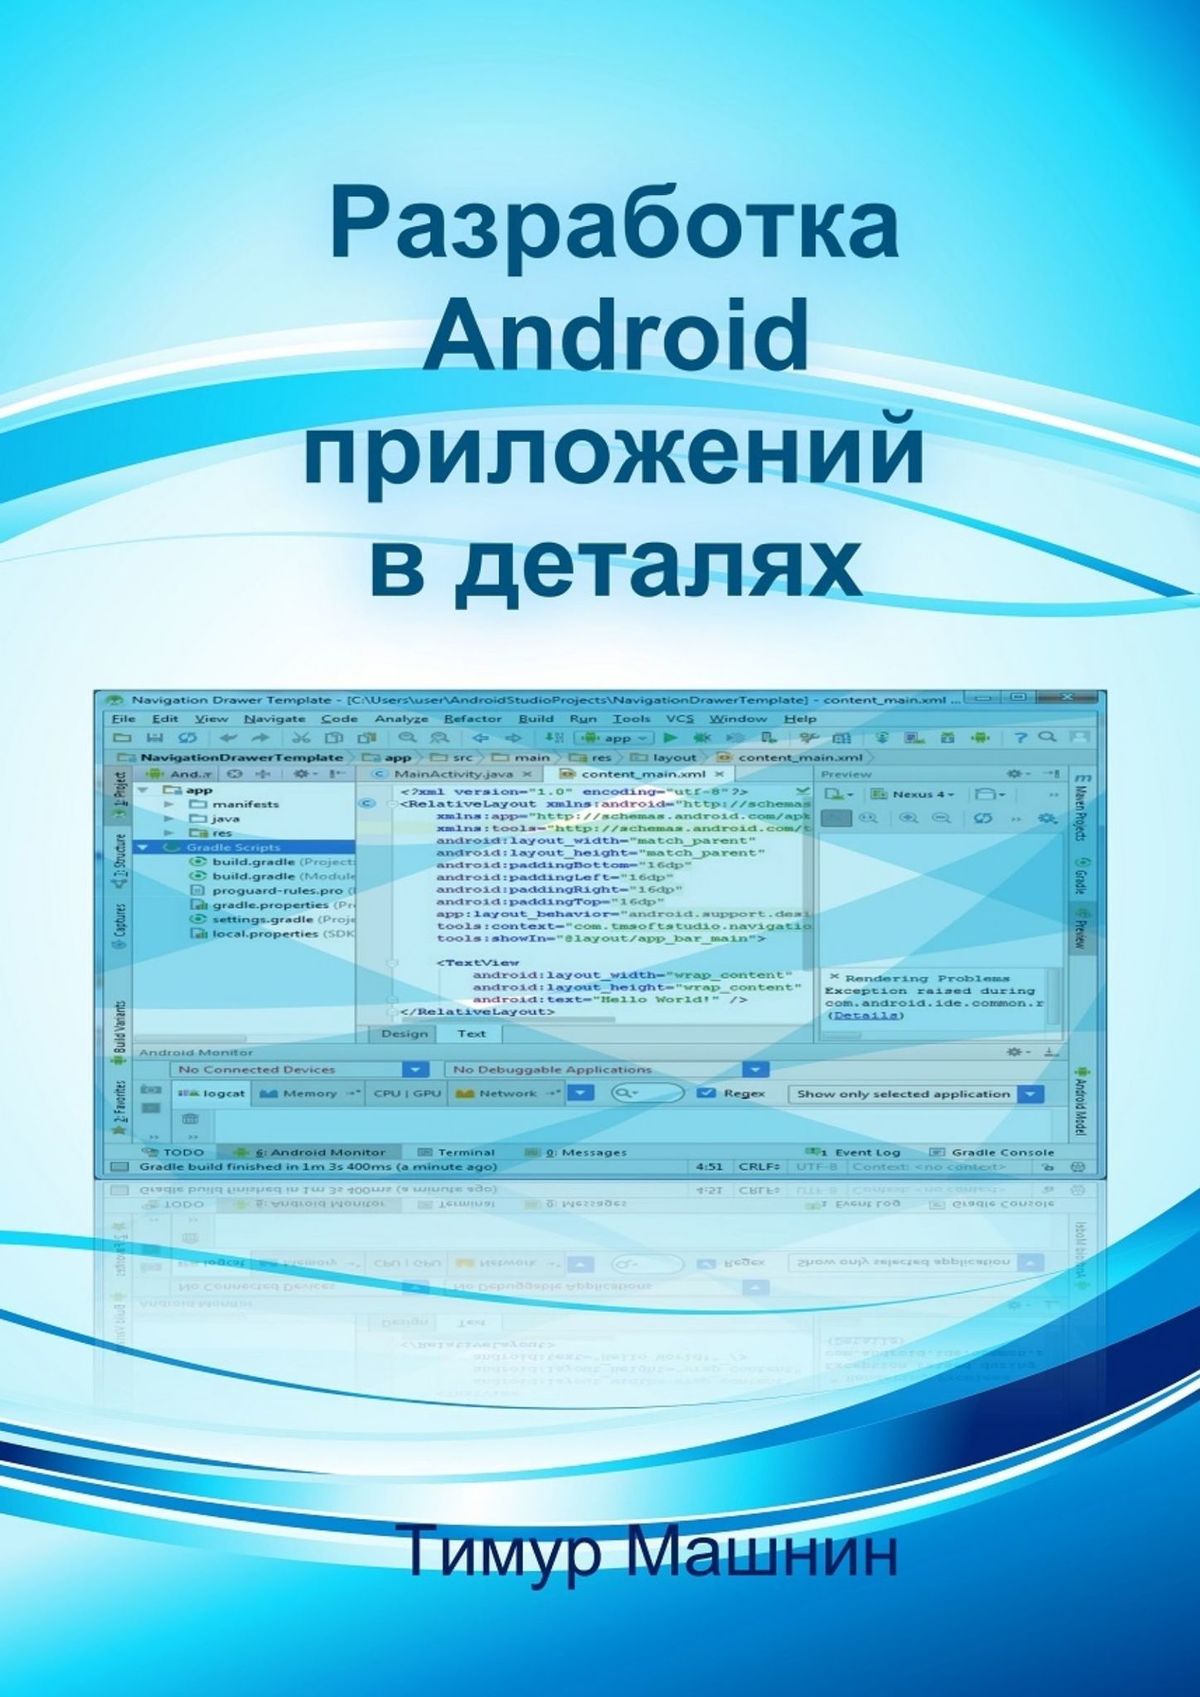 Книга Разработка Android-приложений в деталях из серии , созданная Тимур Машнин, может относится к жанру Компьютеры: прочее. Стоимость электронной книги Разработка Android-приложений в деталях с идентификатором 19489371 составляет 400.00 руб.